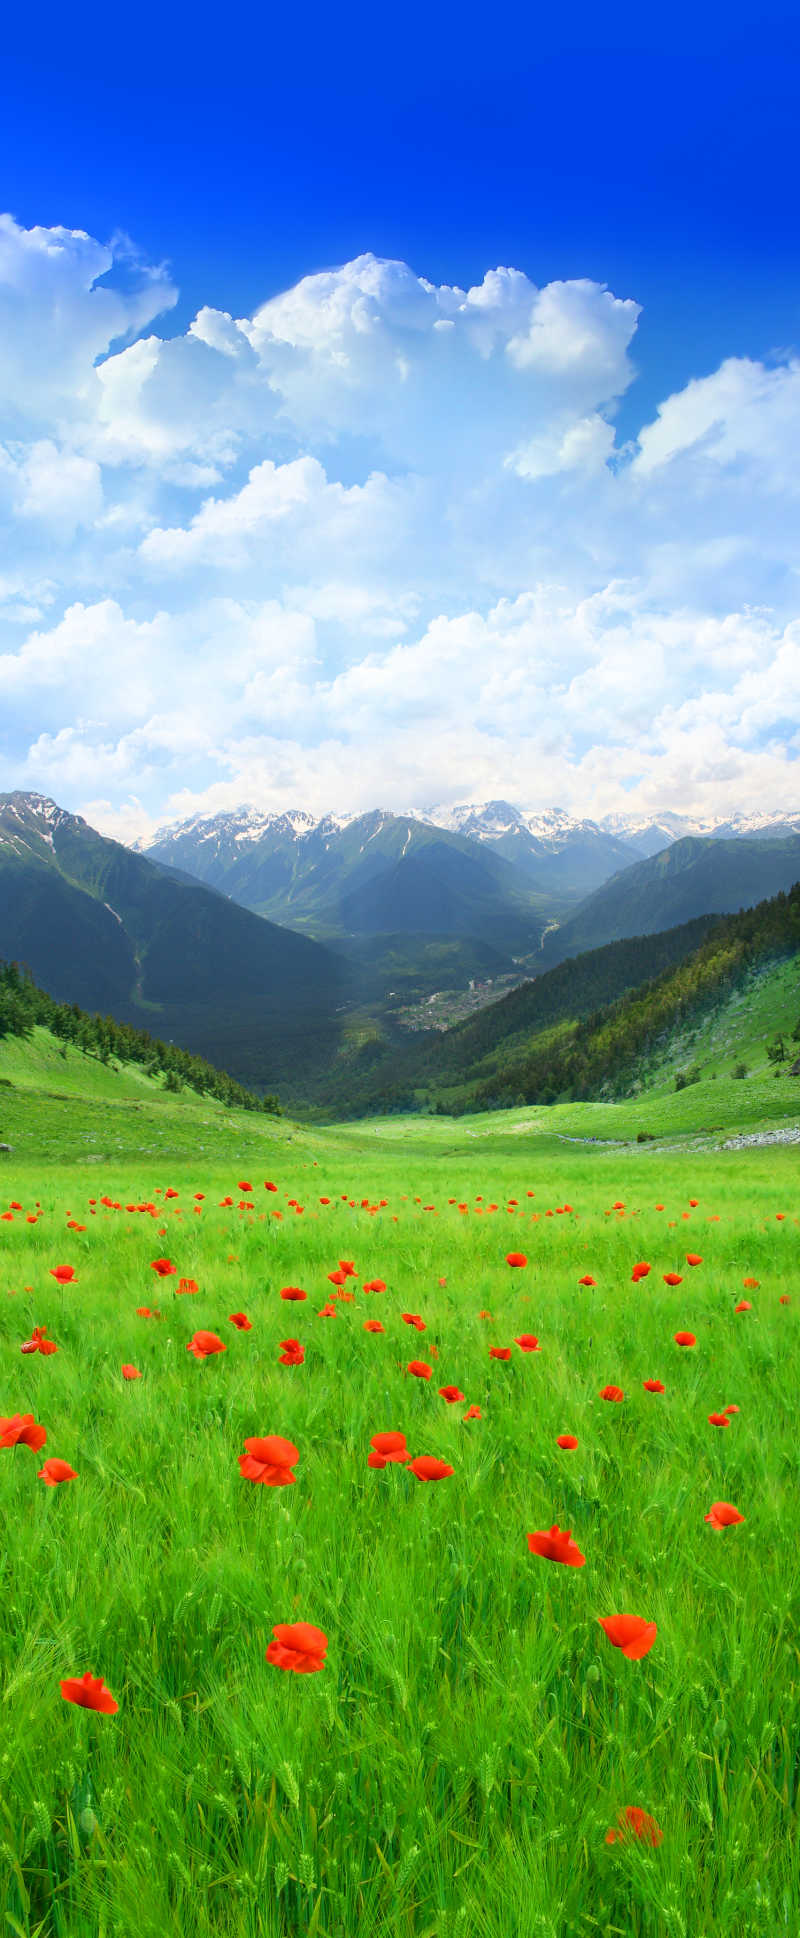 蓝天白云下的美丽野花山谷风景